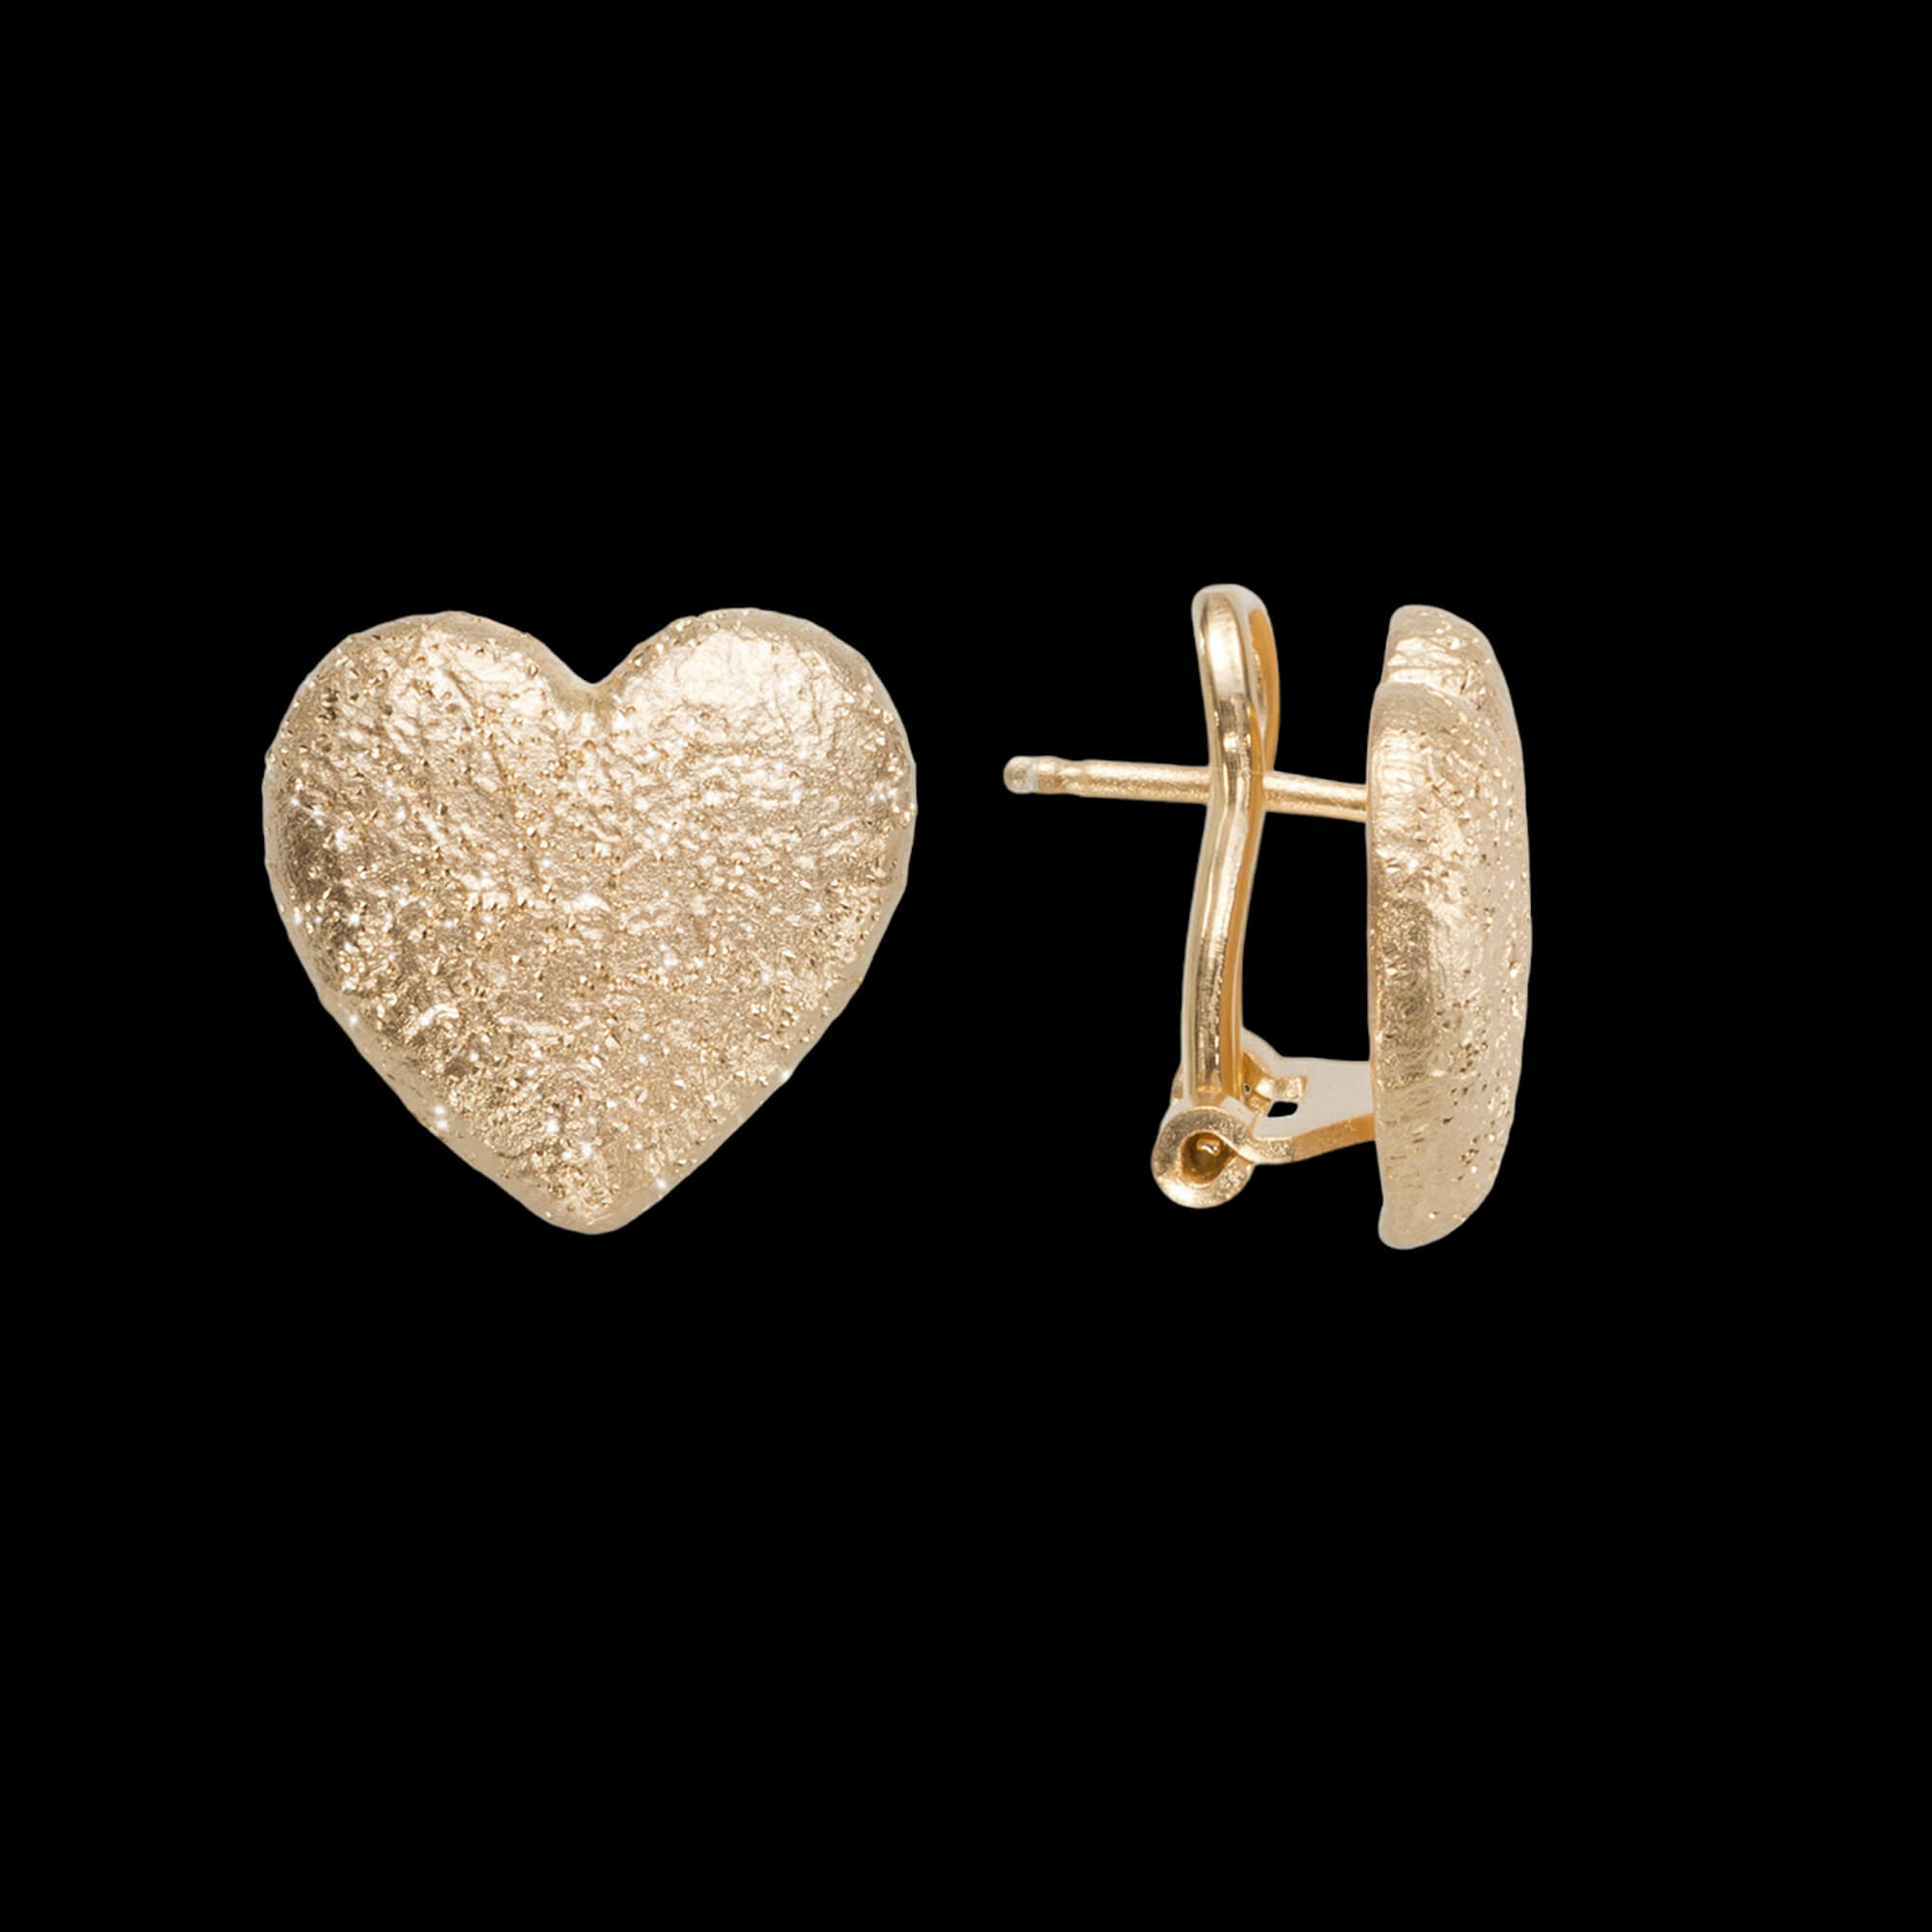 Gilded hearts earrings